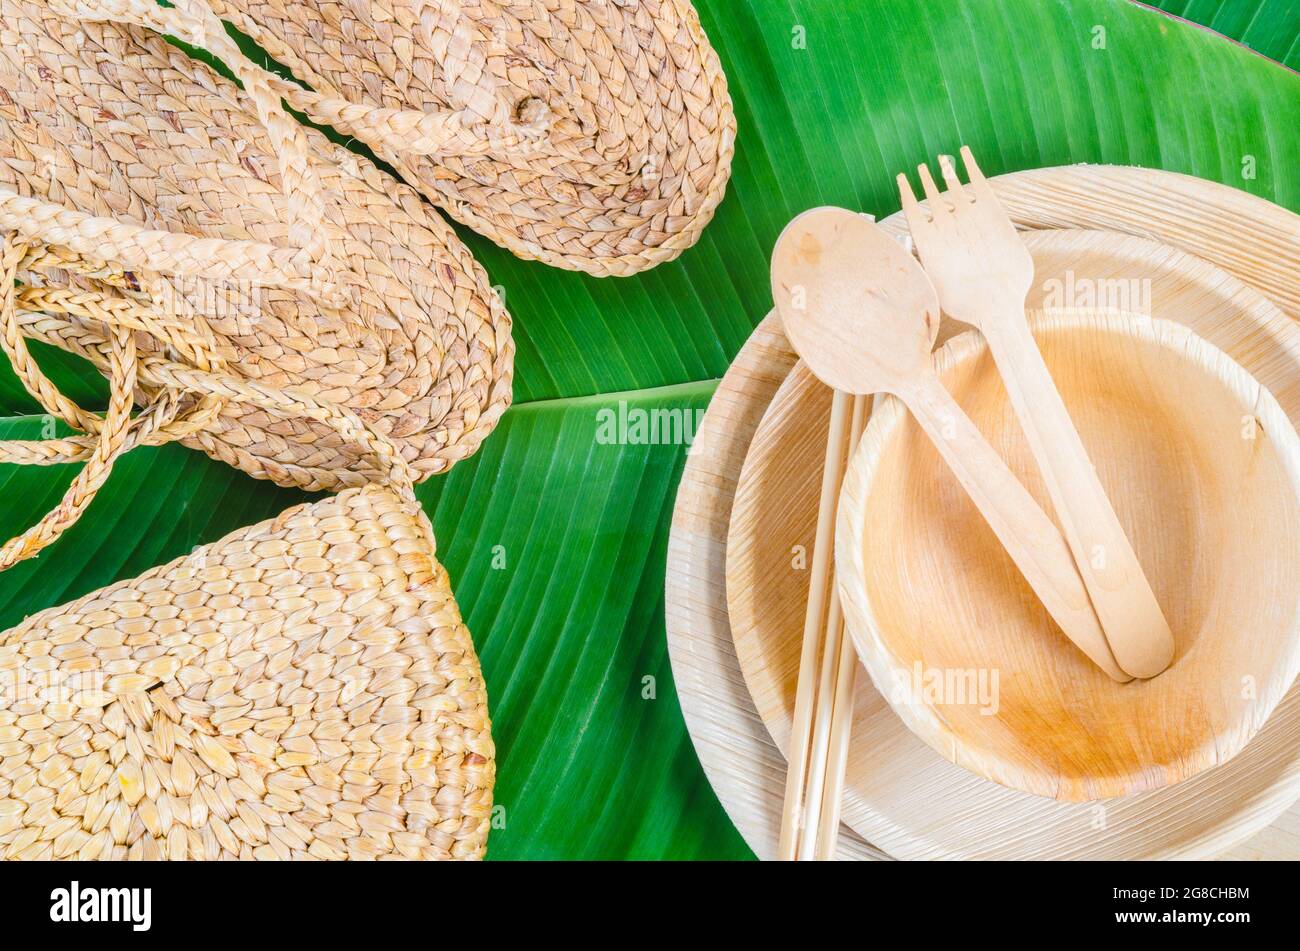 Utensili da cucina realizzati con palma in foglia di betel, Flip flop e borsa realizzati con giacinto d'acqua o giacinto d'acqua galleggiante, materiale naturale. il pr verde Foto Stock